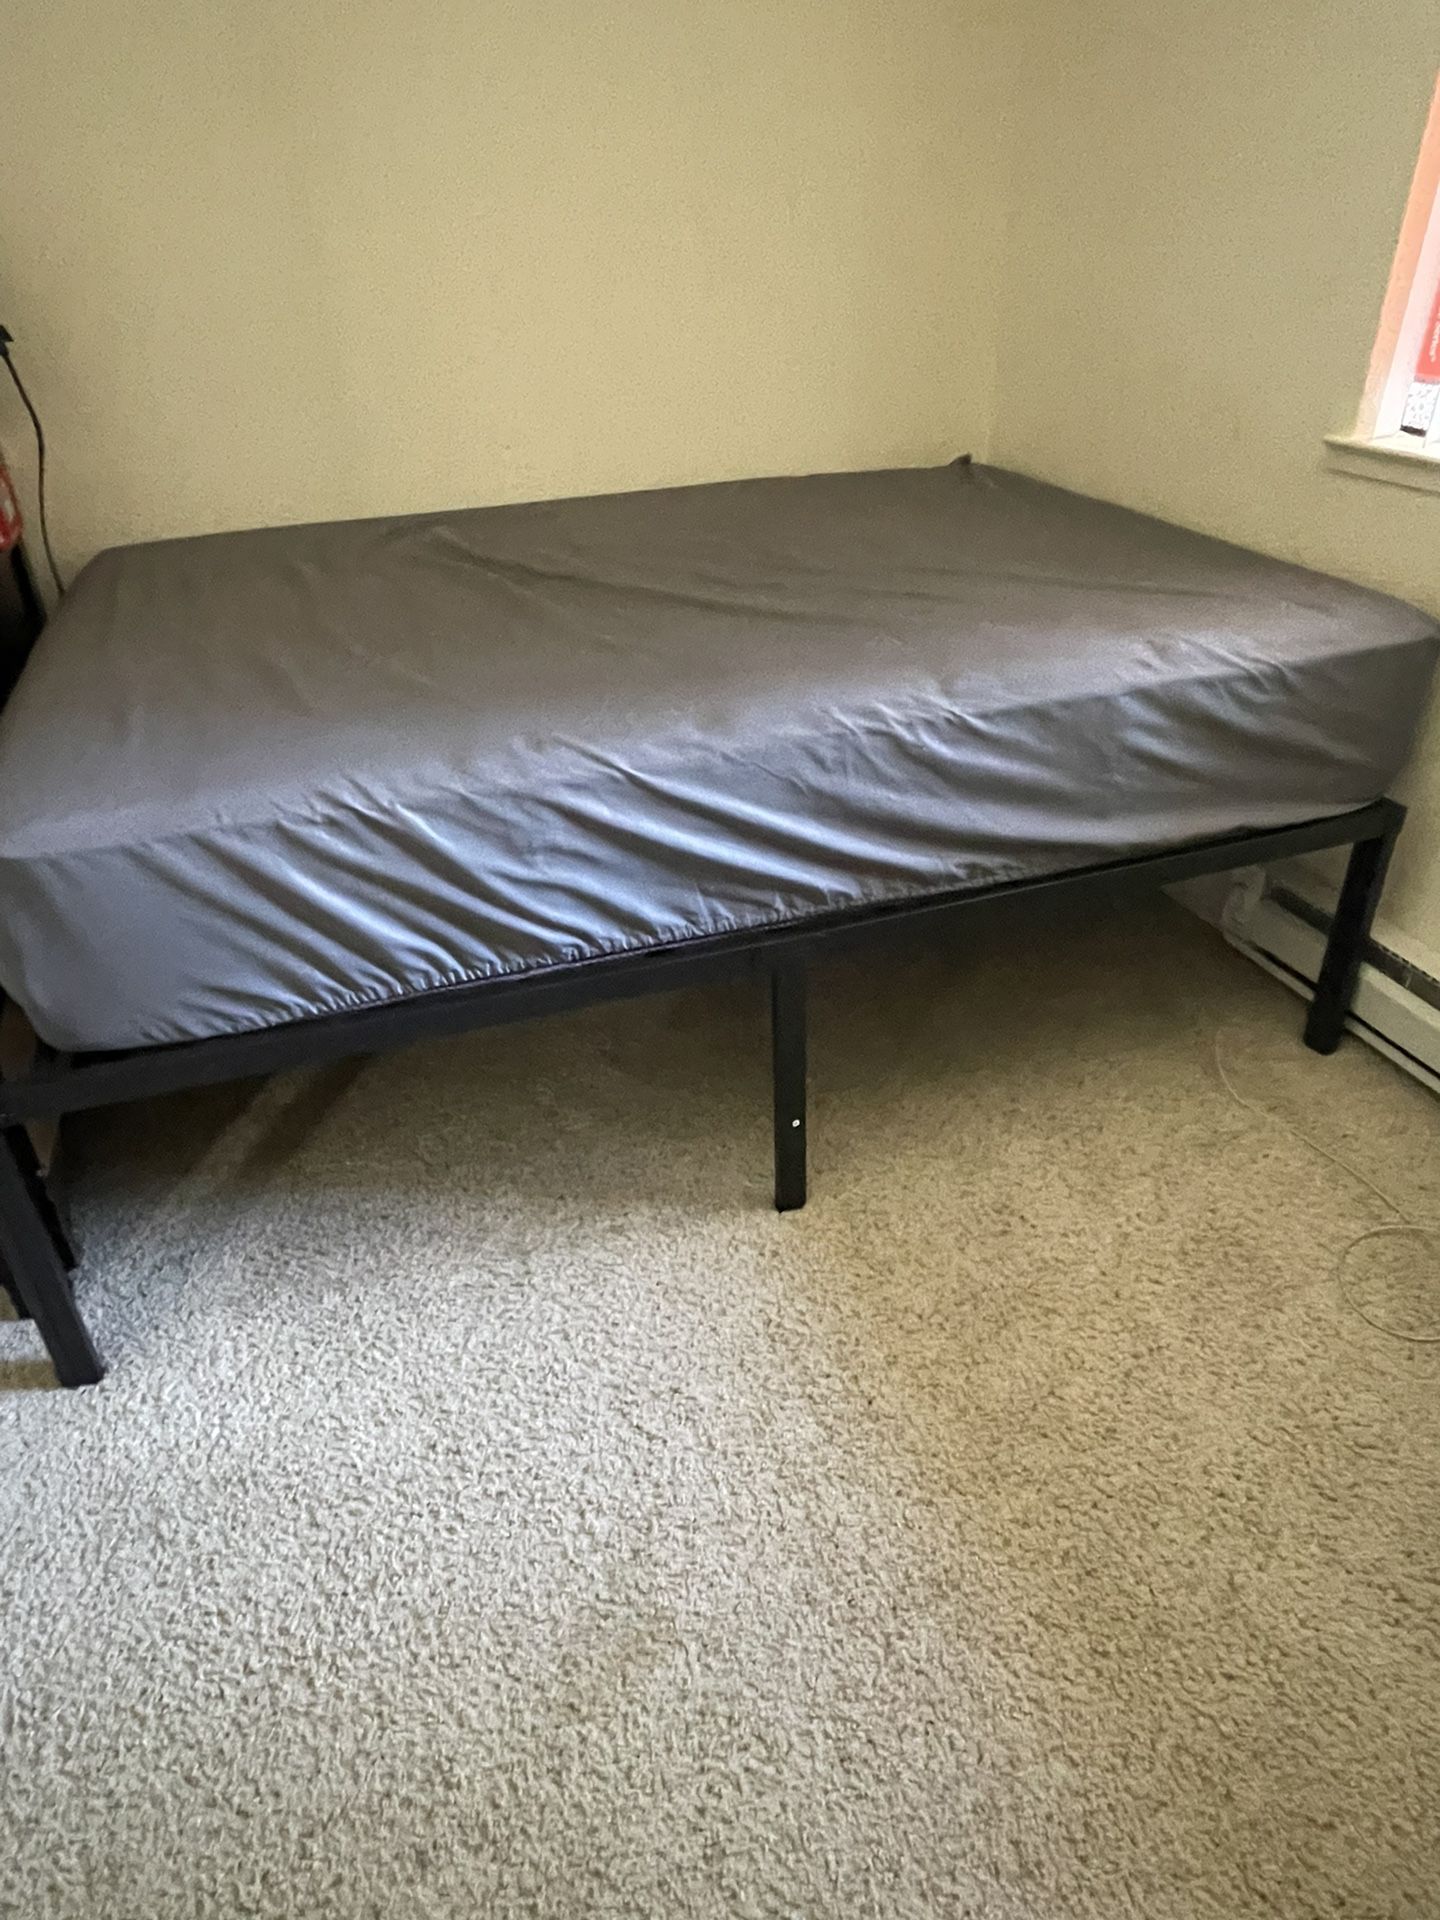 New Bed Full